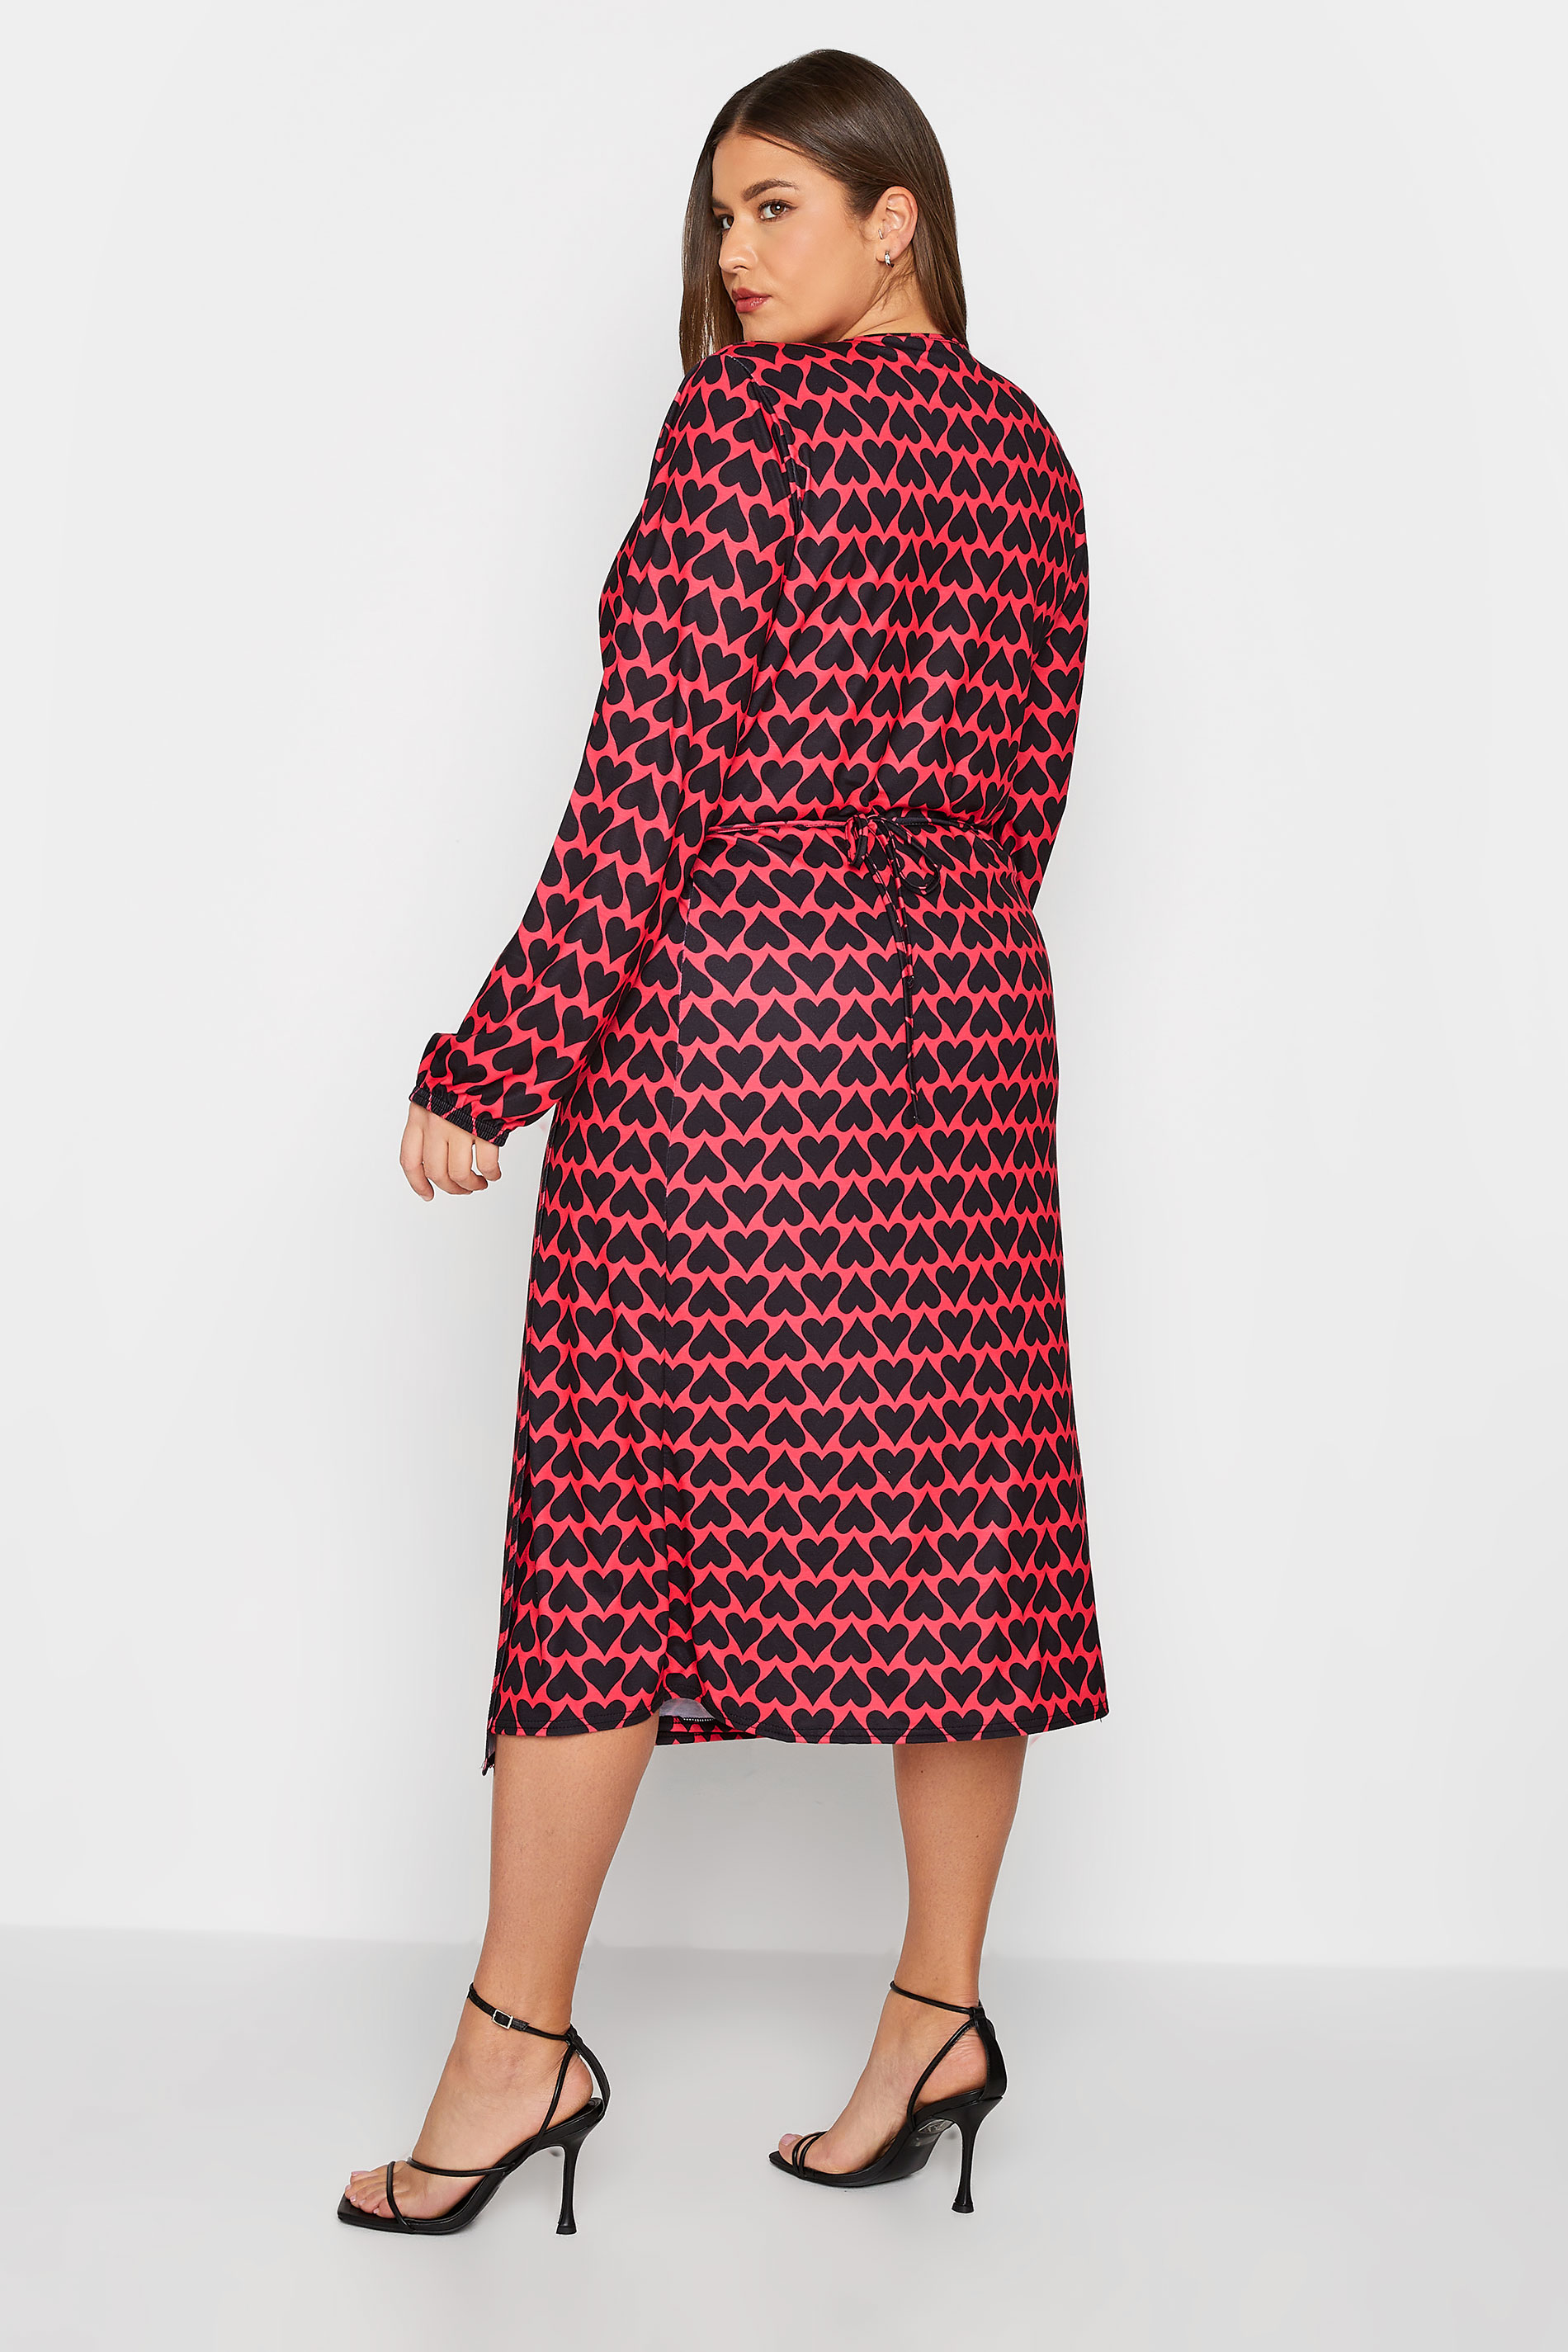 LTS Tall Red & Black Heart Print Midi Wrap Dress | Long Tall Sally  3